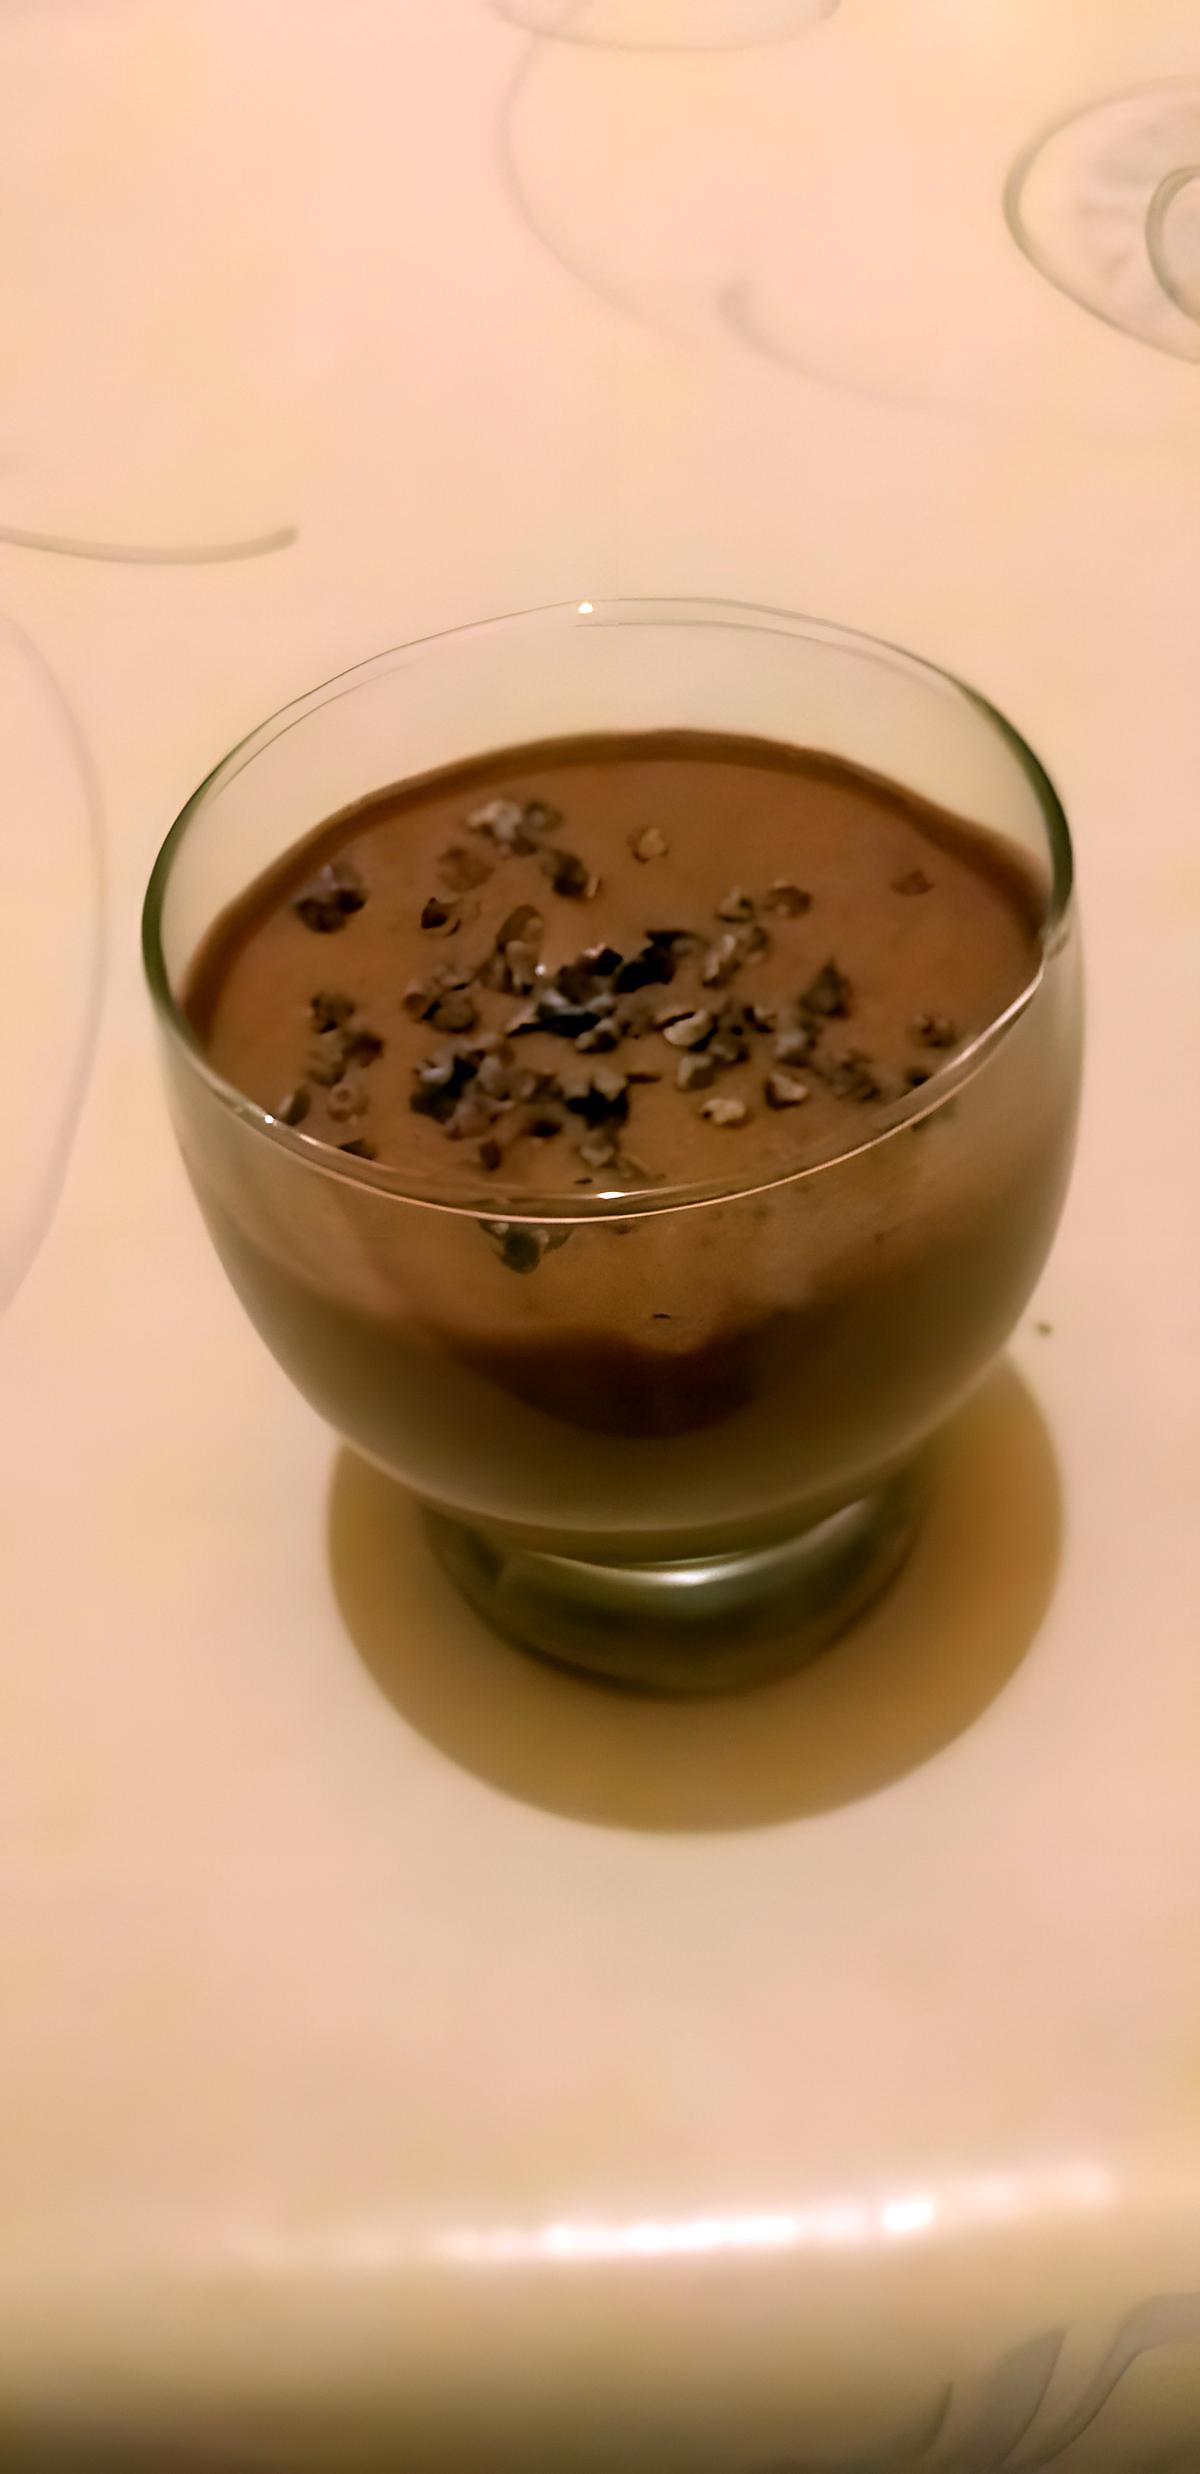 recette Mousse au chocolat et son grué de cacao